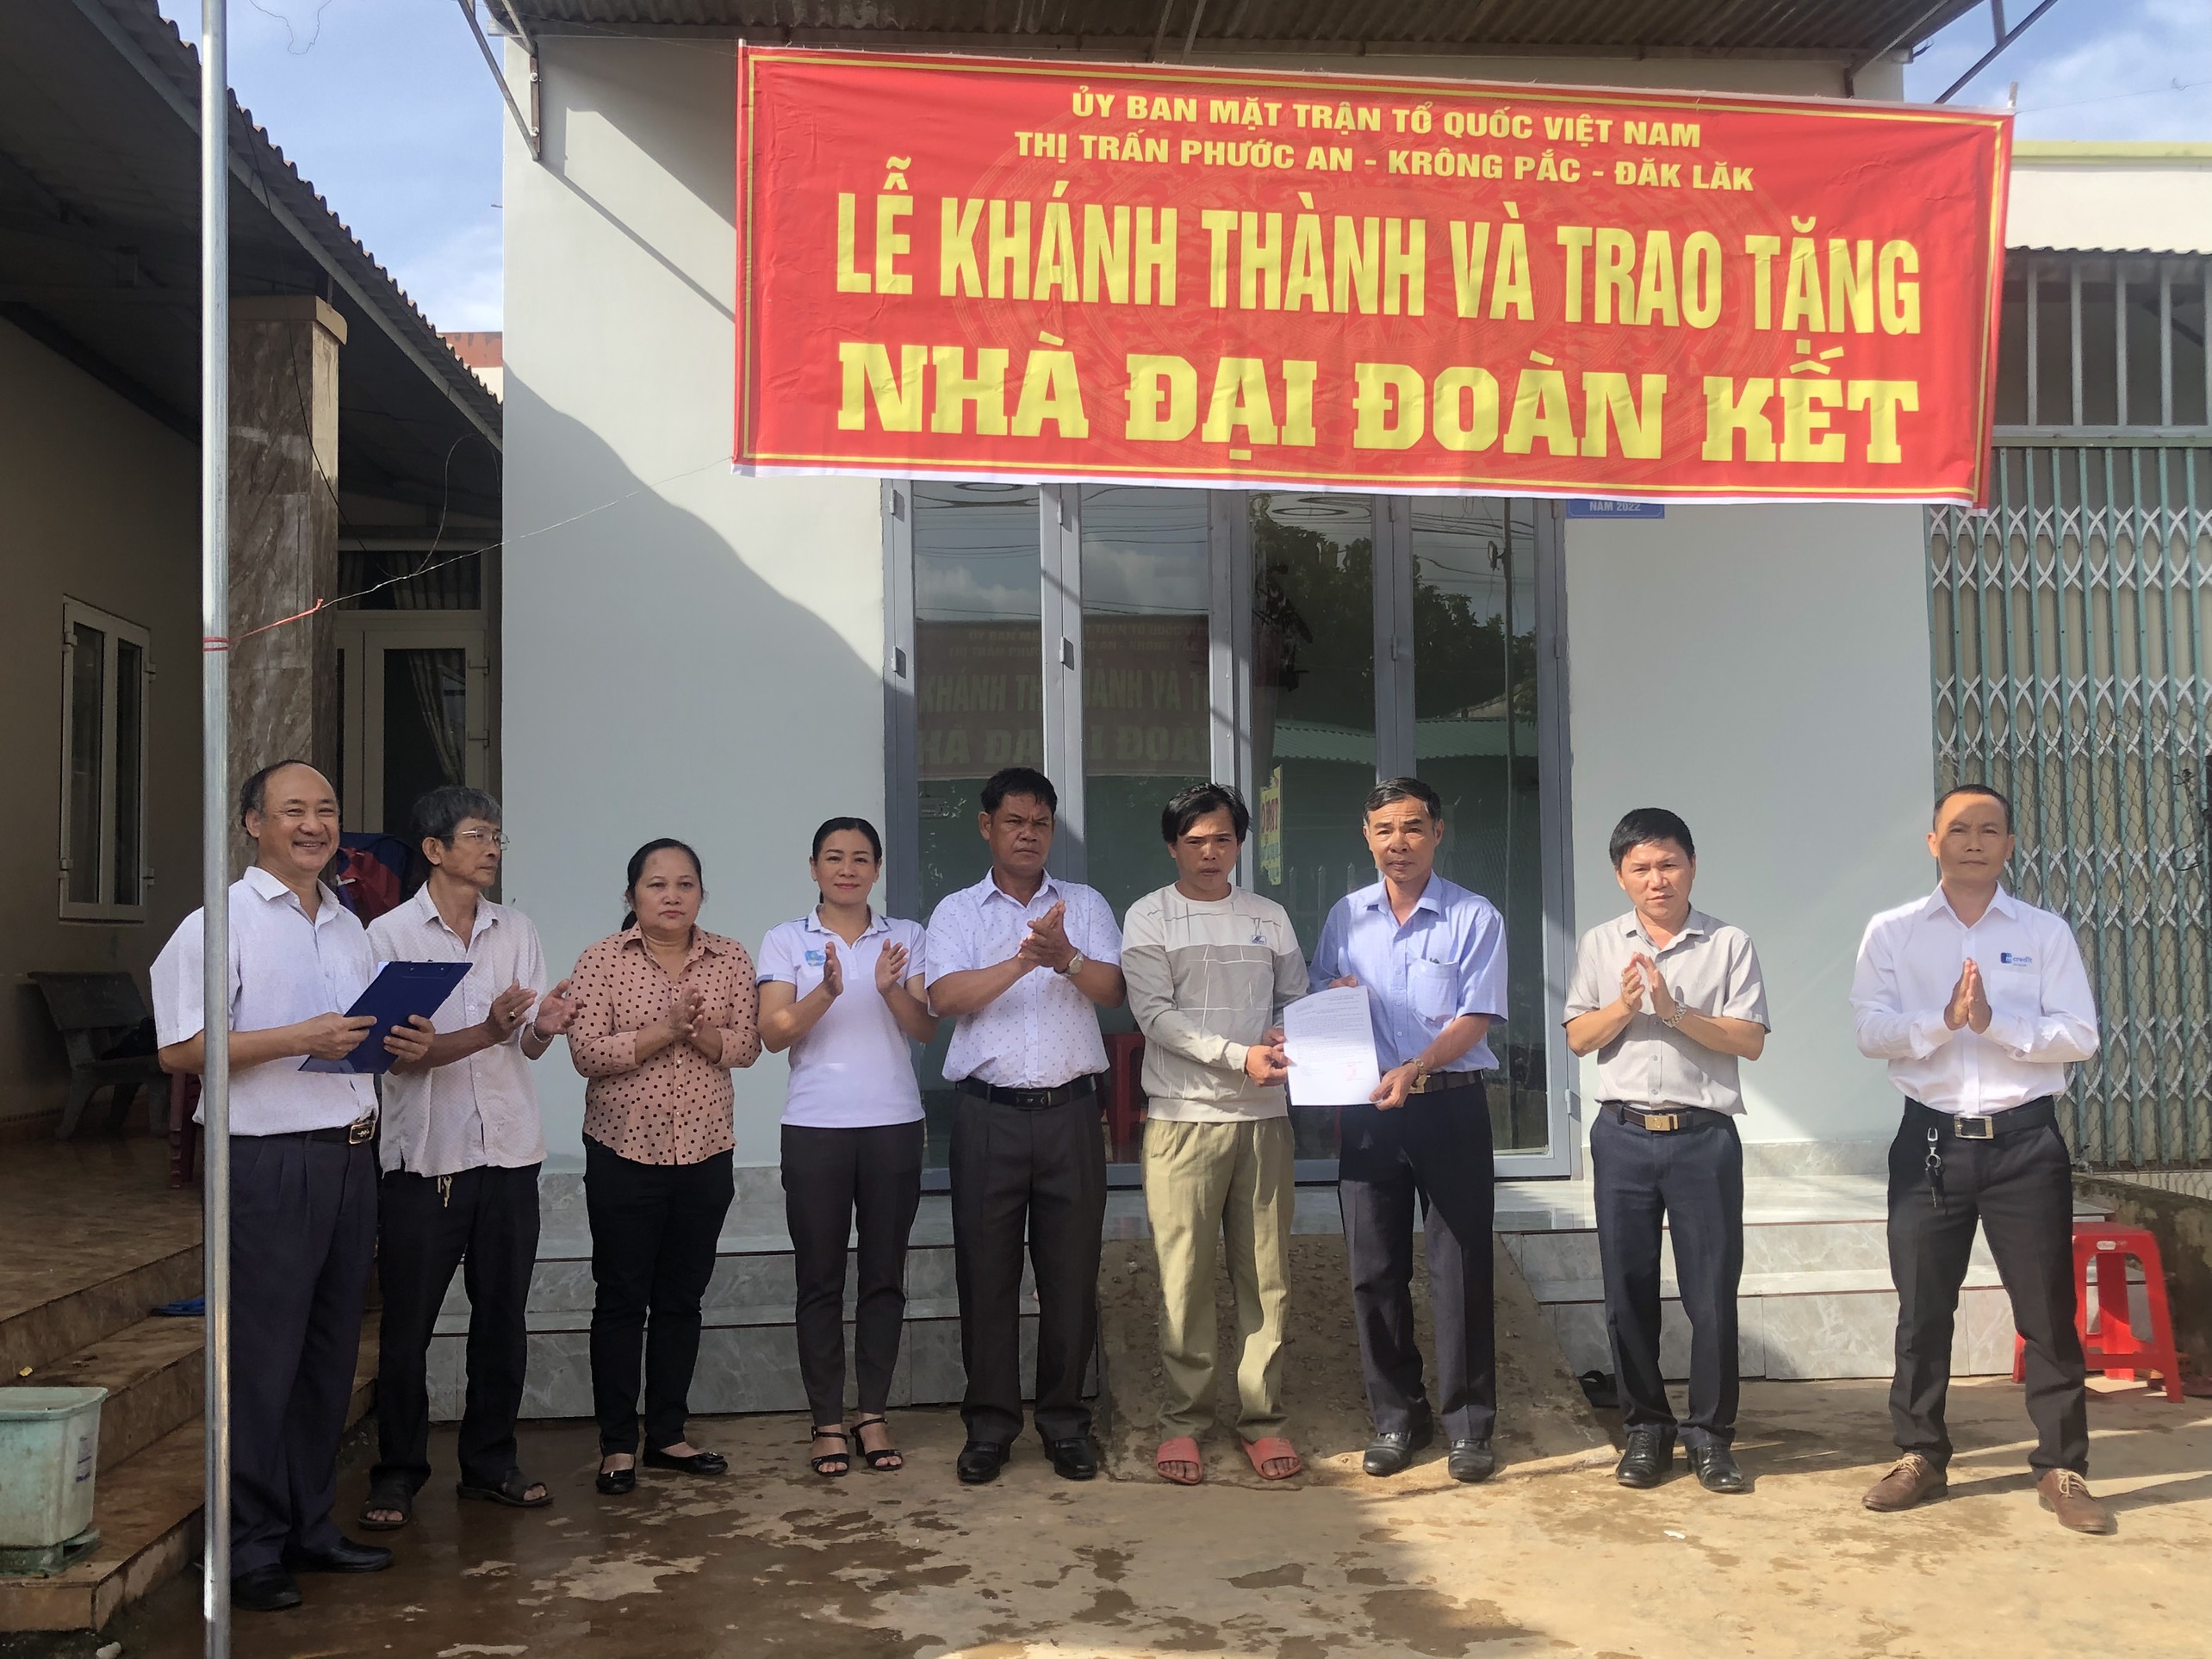  Đảng ủy- HĐND-UBND- UB MTTQ Việt Nam thị trấn Phước An  tổ chức lễ  tổ chức trao tặng nhà đại đoàn kết cho hộ nghèo tại TDP 11